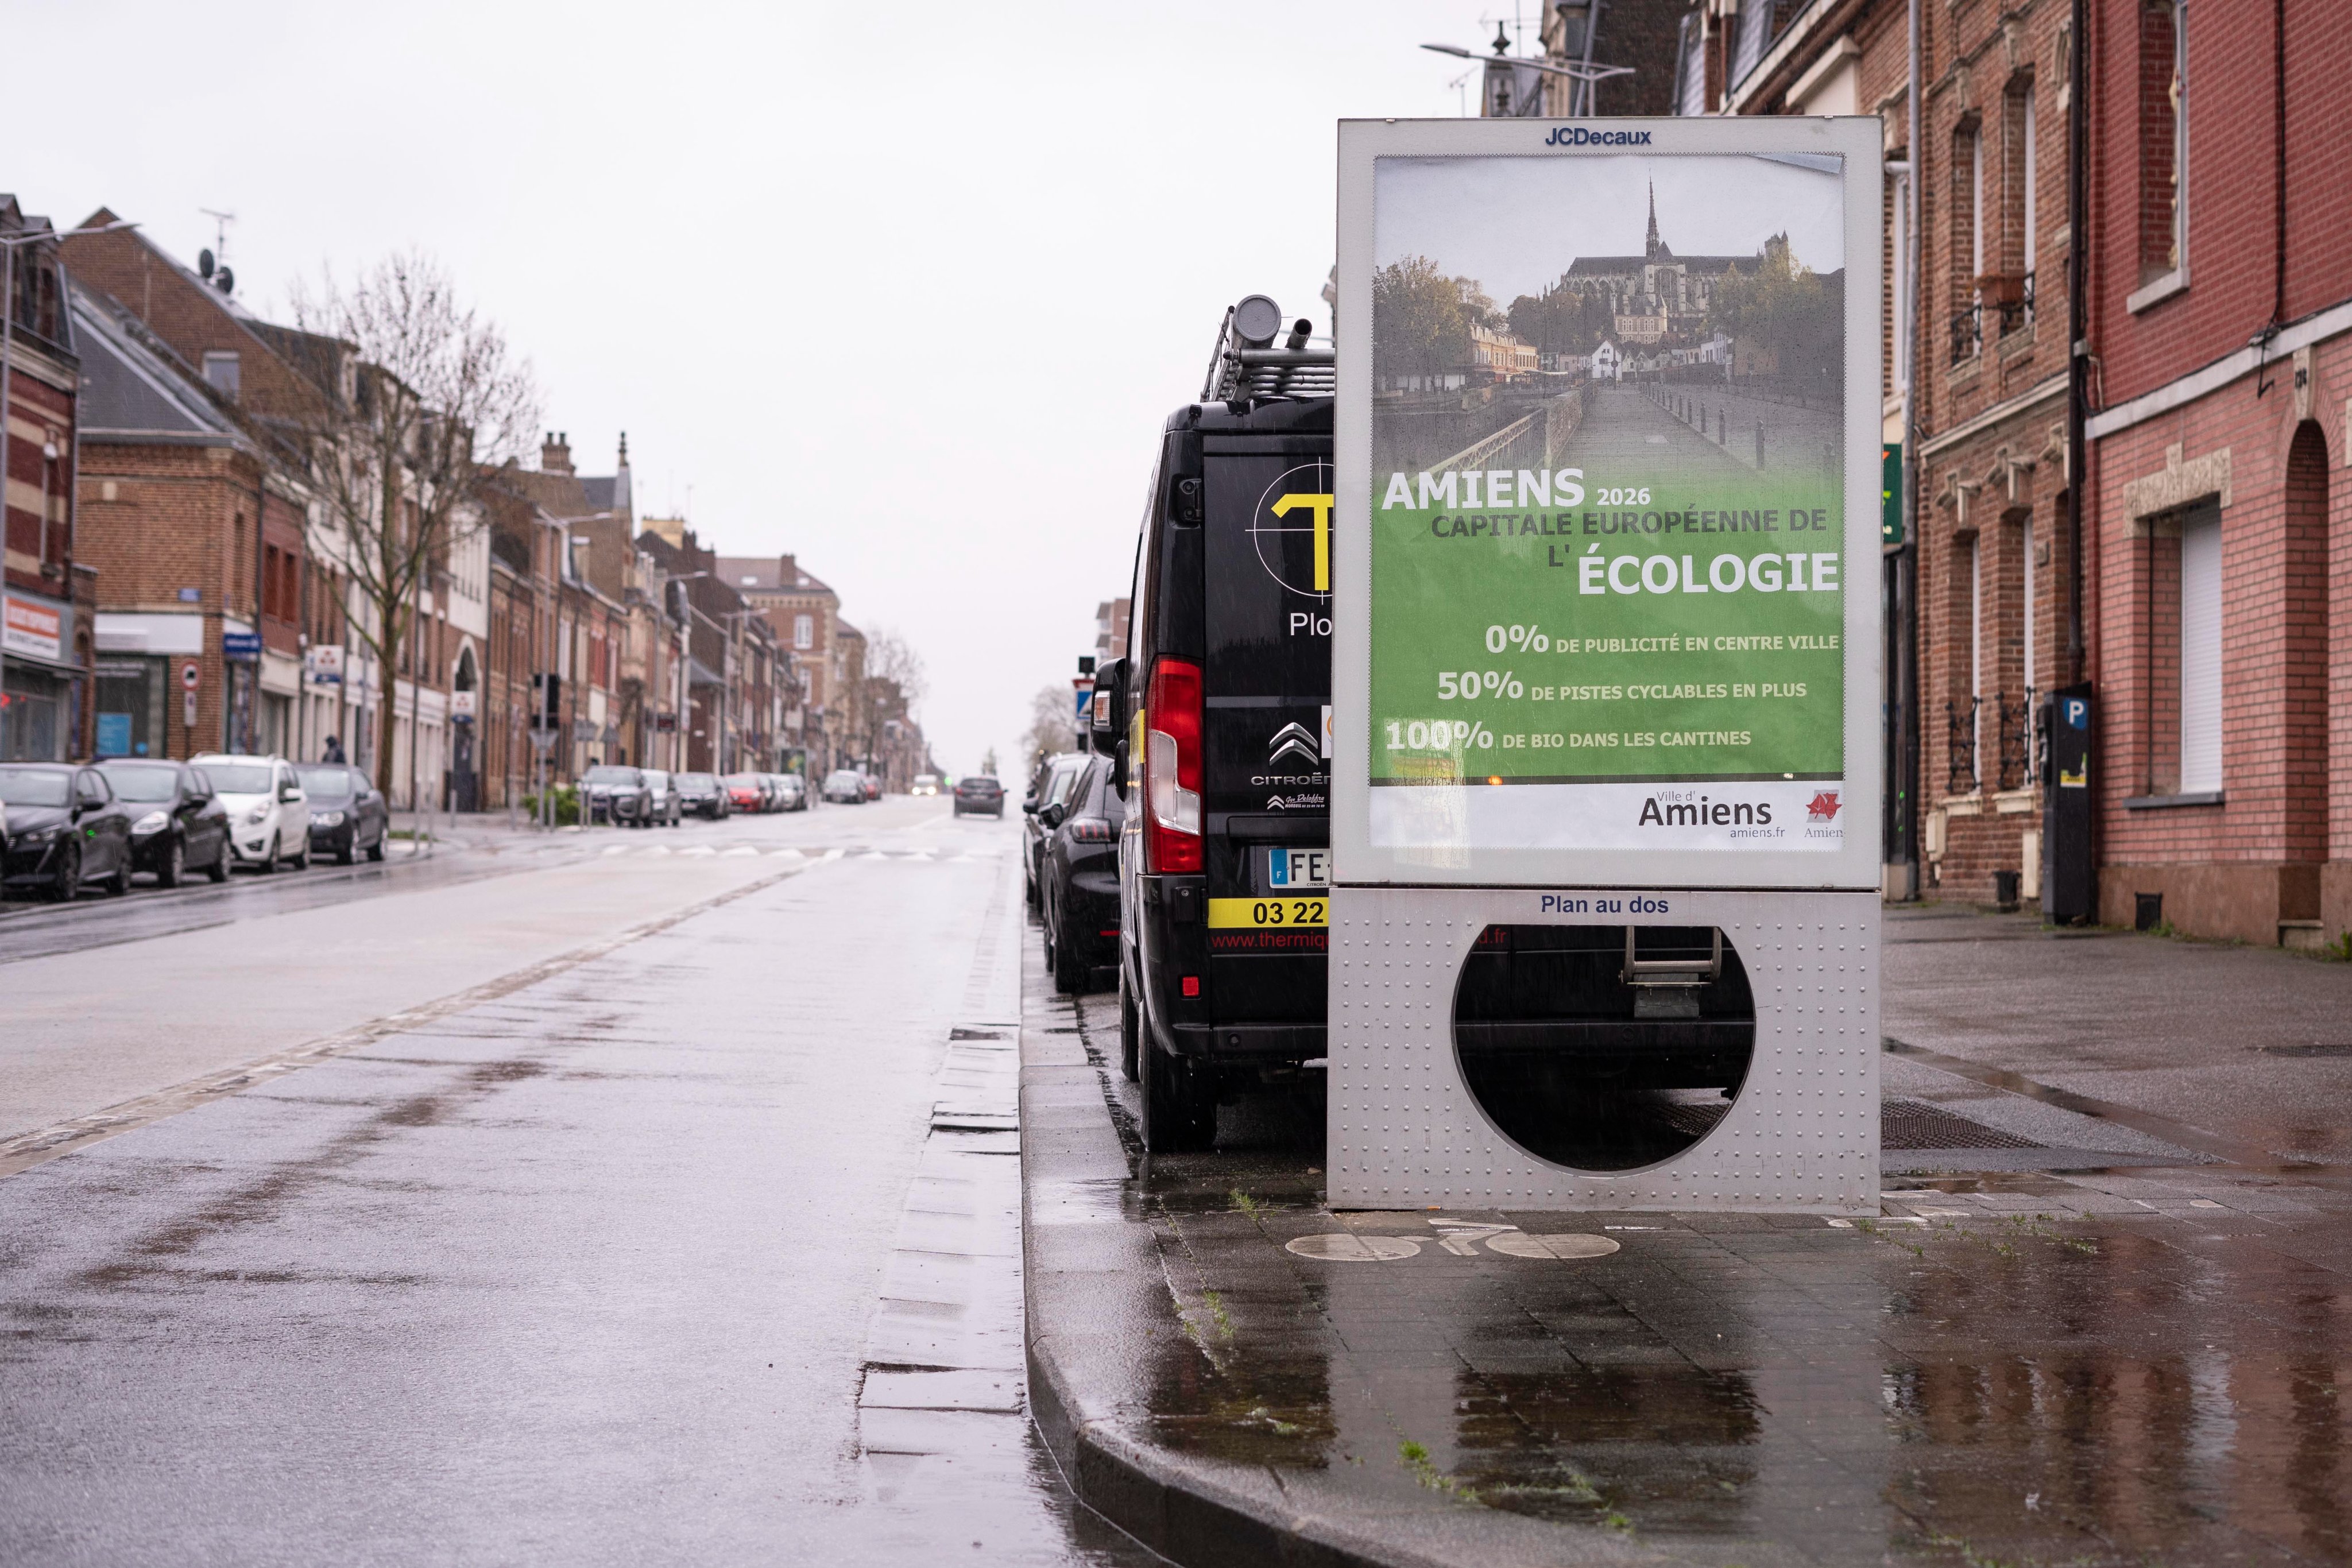 Panneau publicitaire avec une affiche "Amiens, capitale européenne de l'écologie"